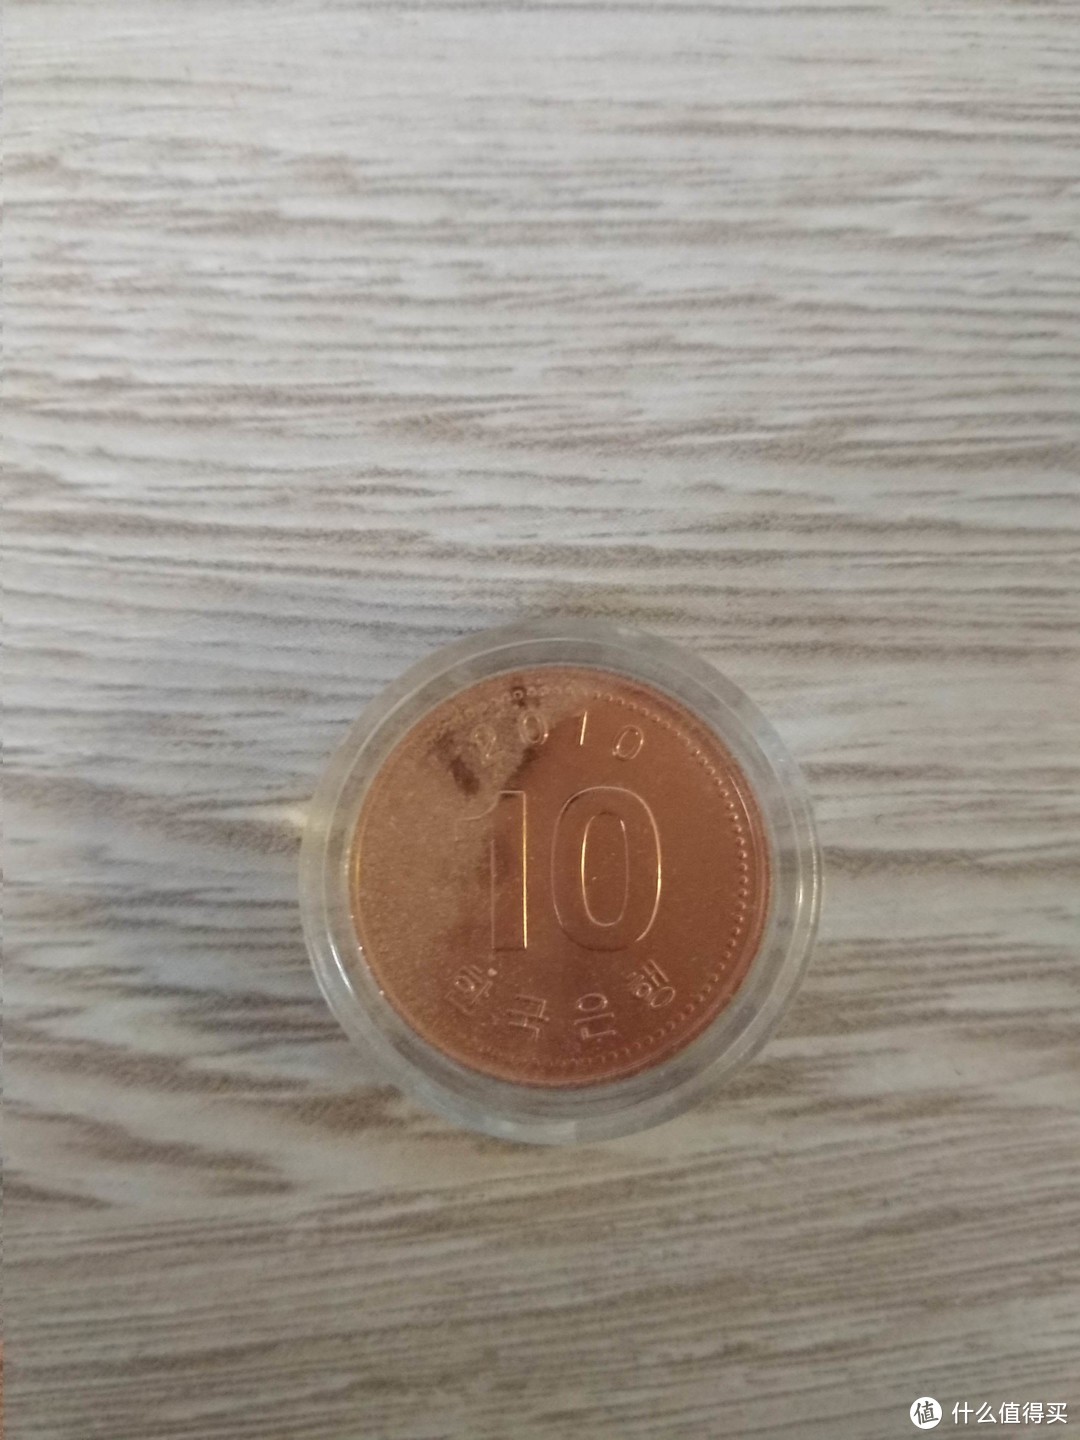 包含几个国家的欧元，看着蛮稀罕的，一个收藏控的小小歪果硬币的存货